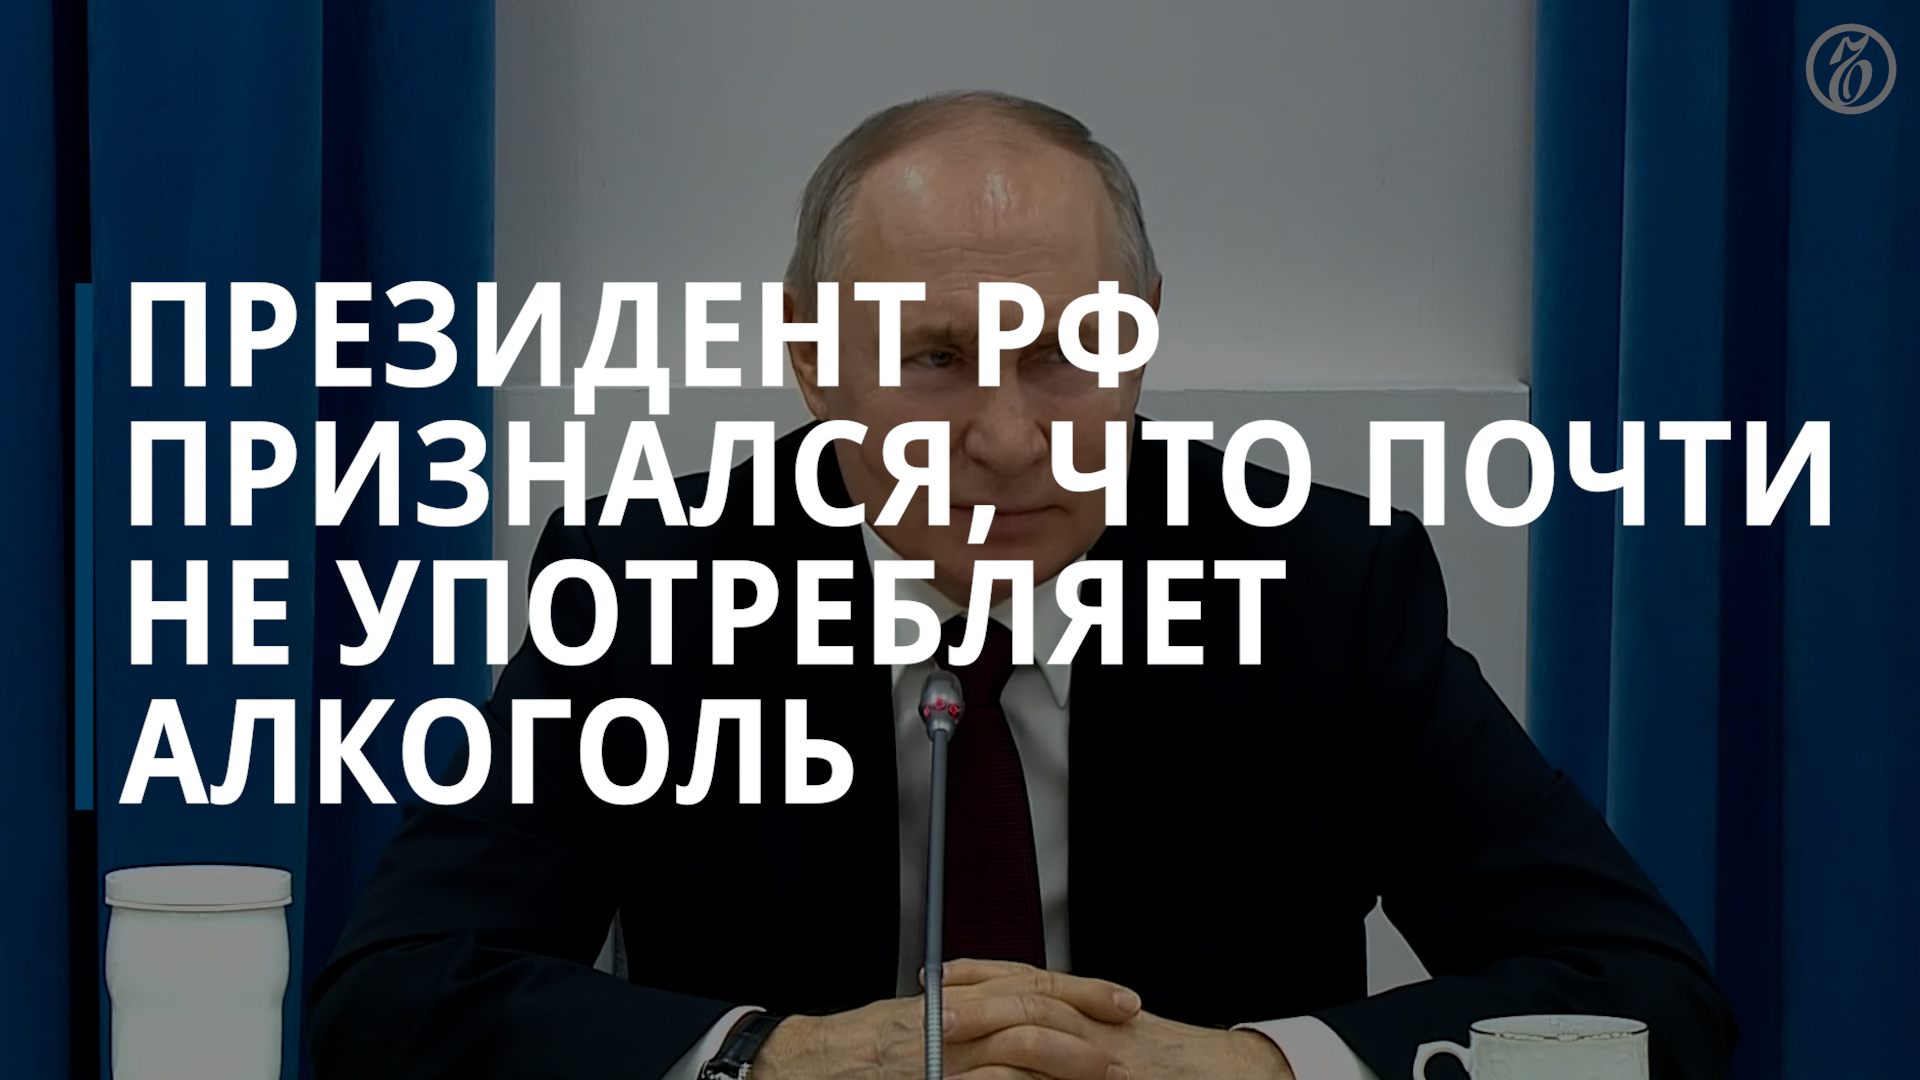 Путин рассказал летчицам, что почти отказался от алкоголя, — Коммерсантъ